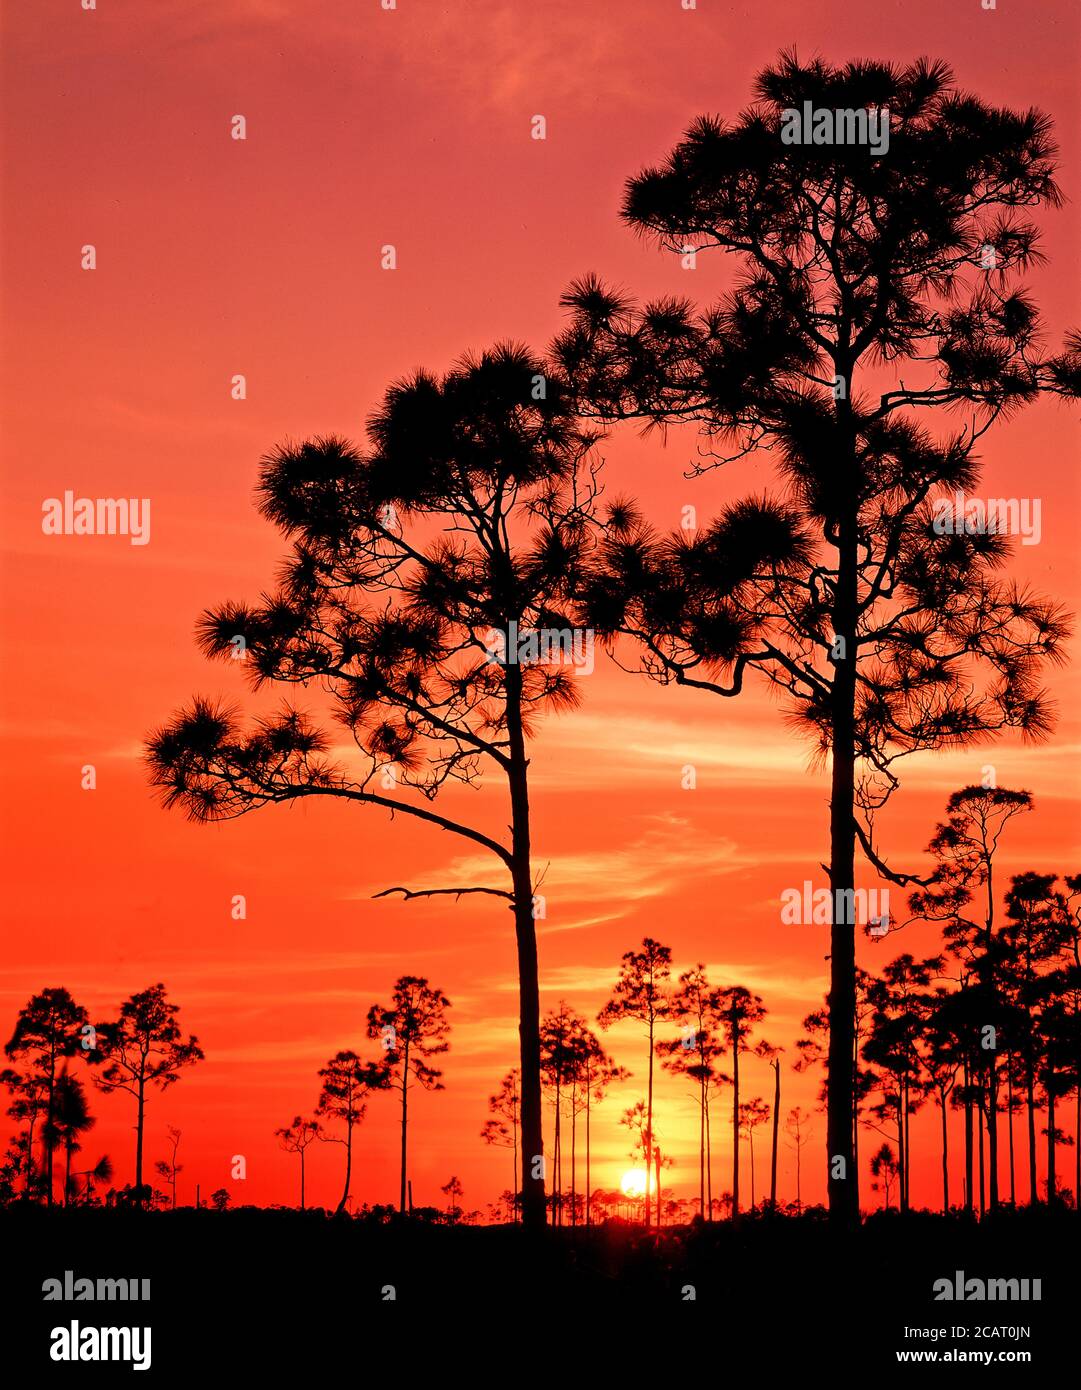 Bäume silhouetted gegen eine orange sunet Himmel in den Everglades Nationalpark im Süden Floridas in den Vereinigten Staaten Stockfoto